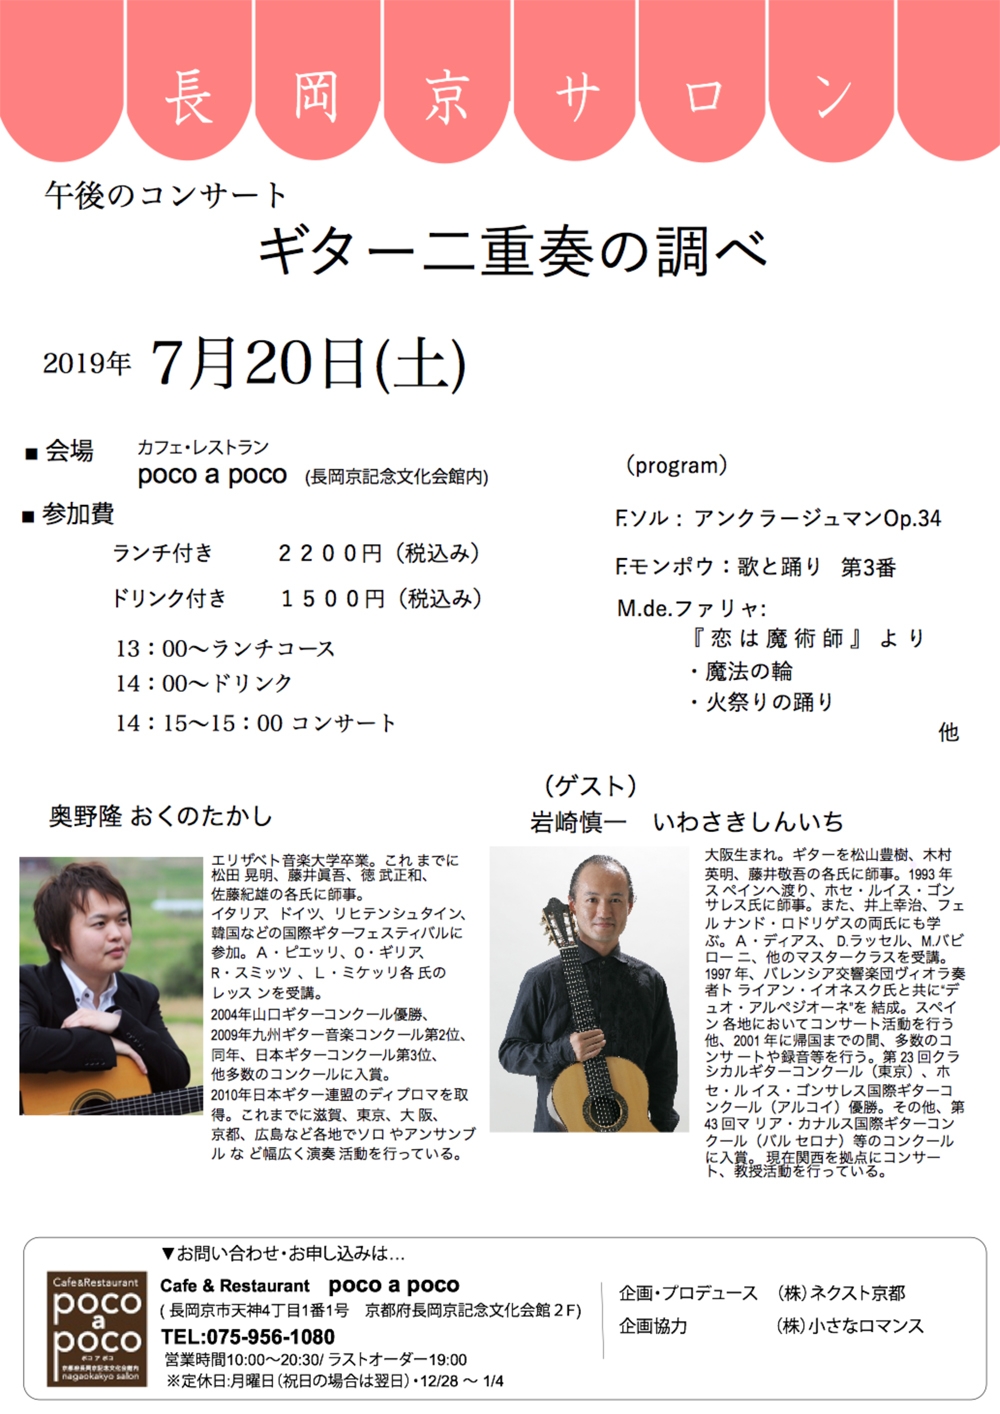 長岡京サロン 午後のコンサート ギター二重奏の調べ